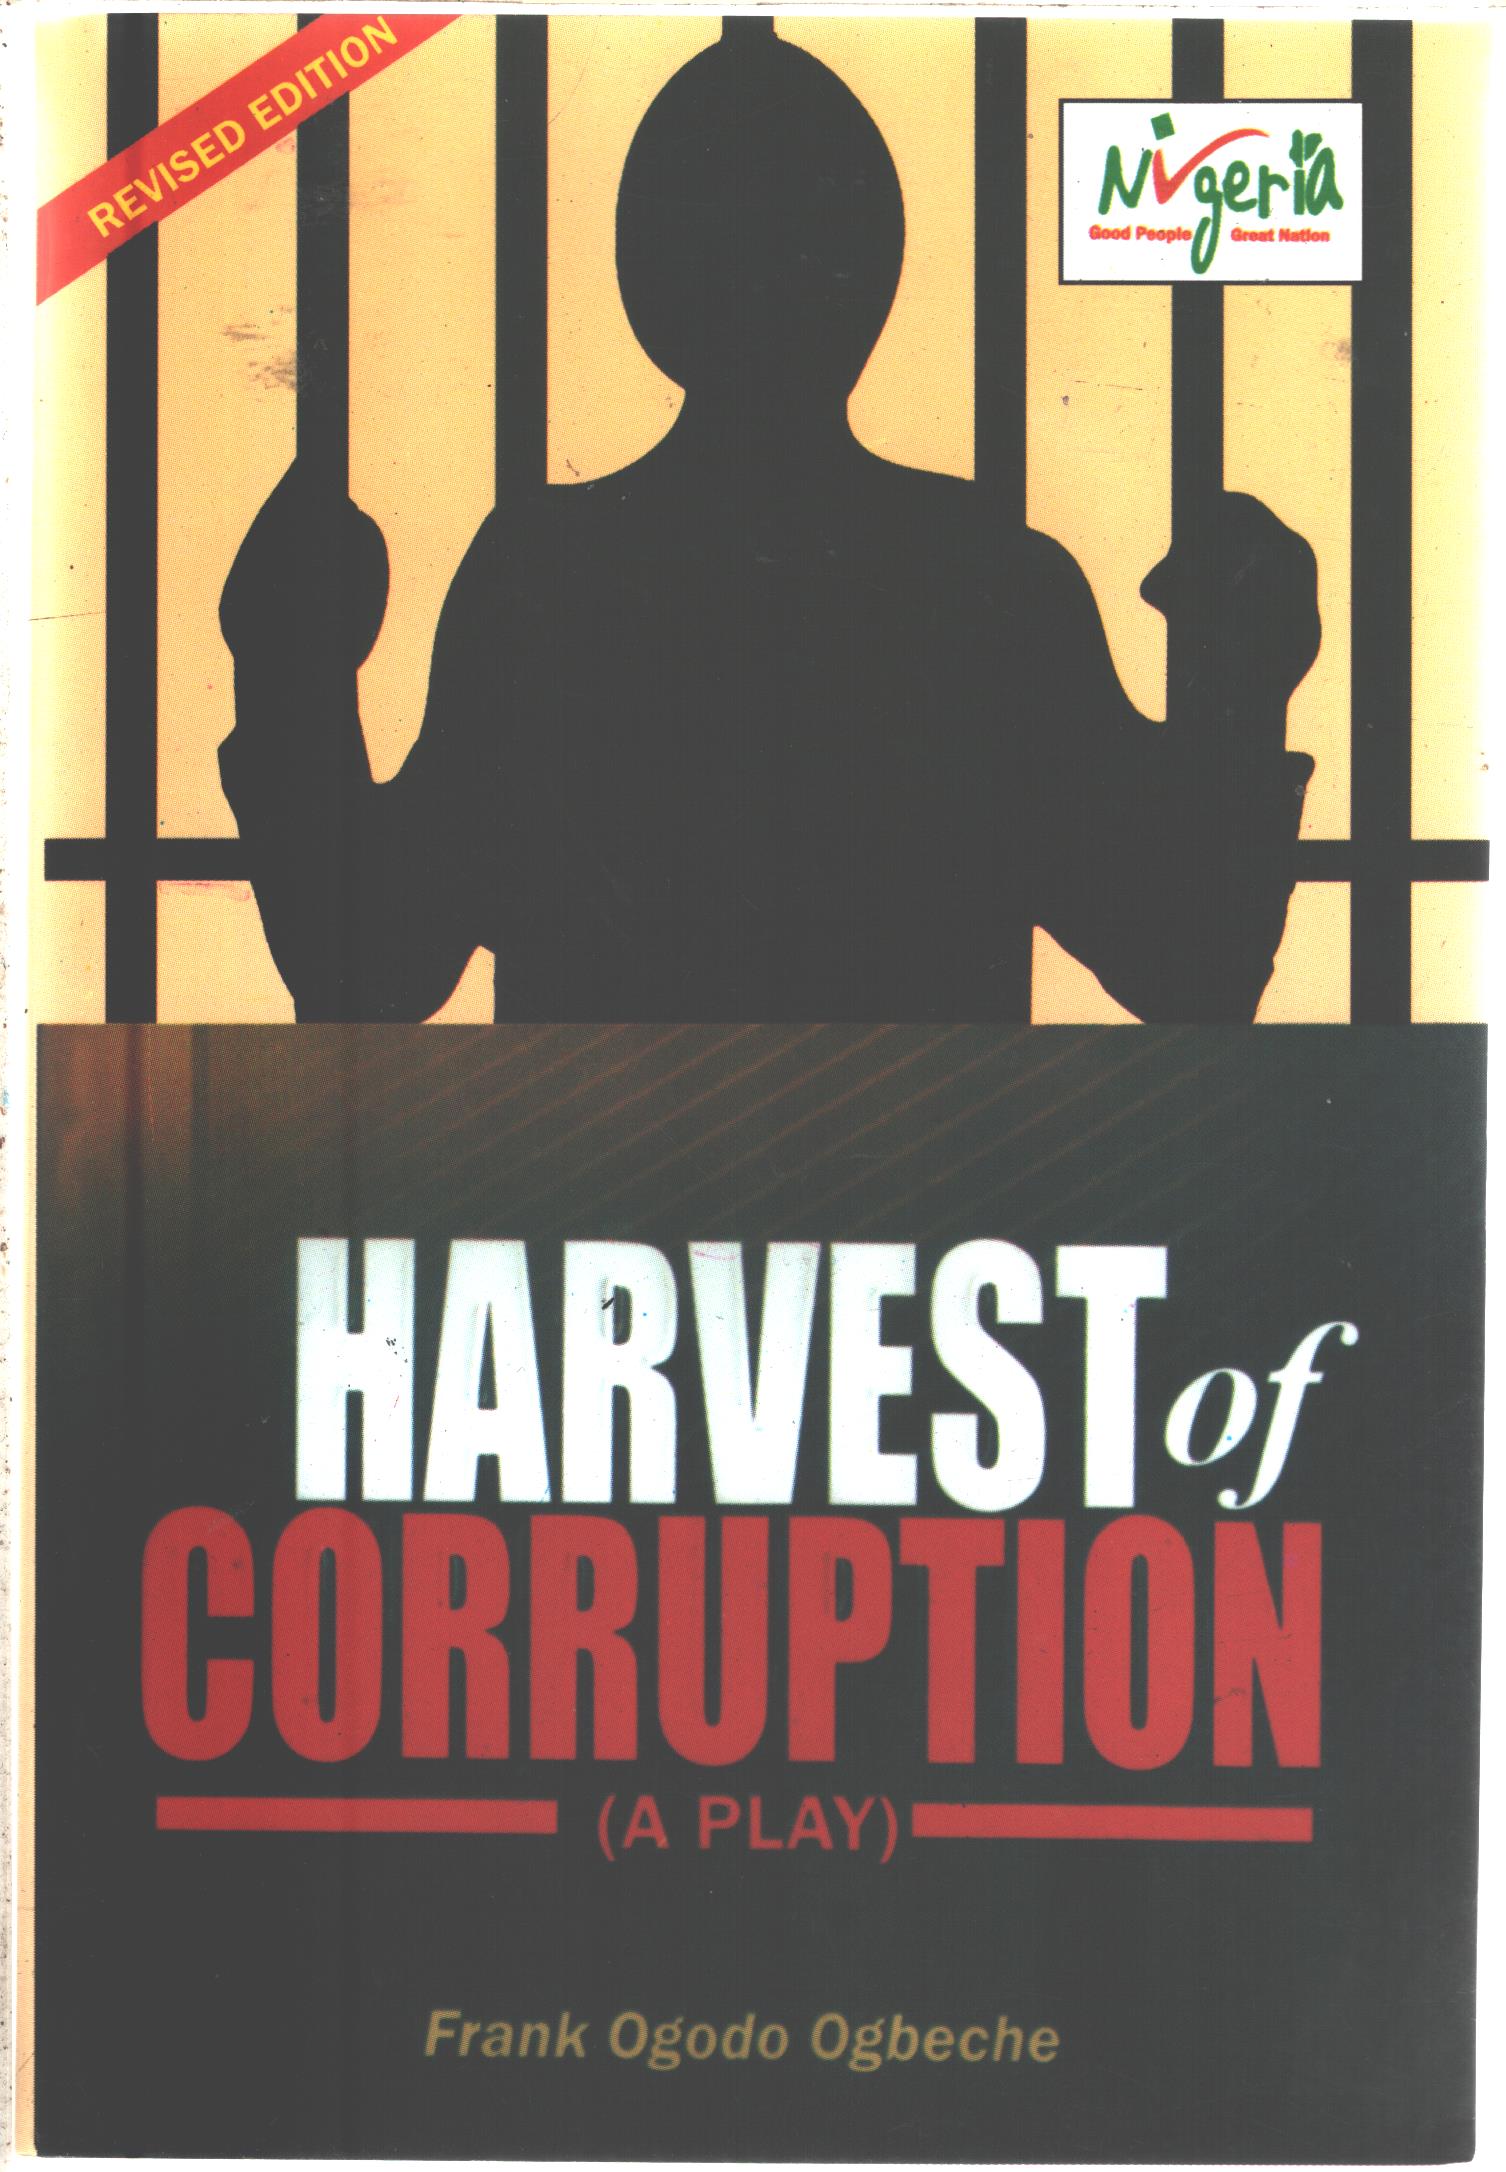 Harvest of Corruption (Frank Ogodo Ogbeche)